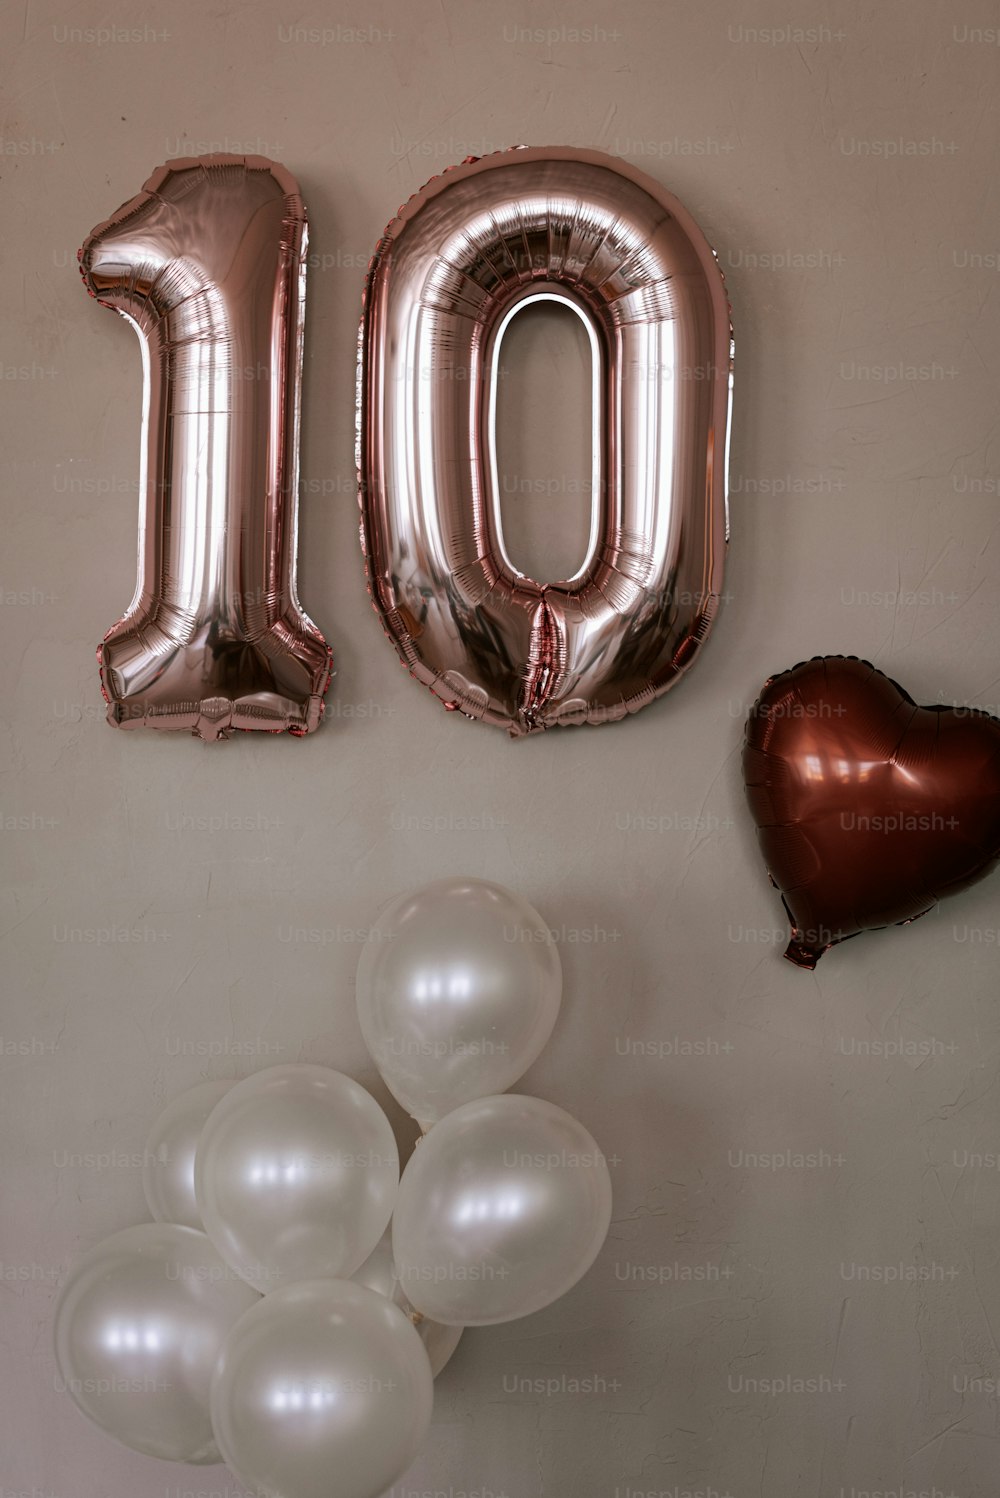 um balão número 10 e um monte de balões